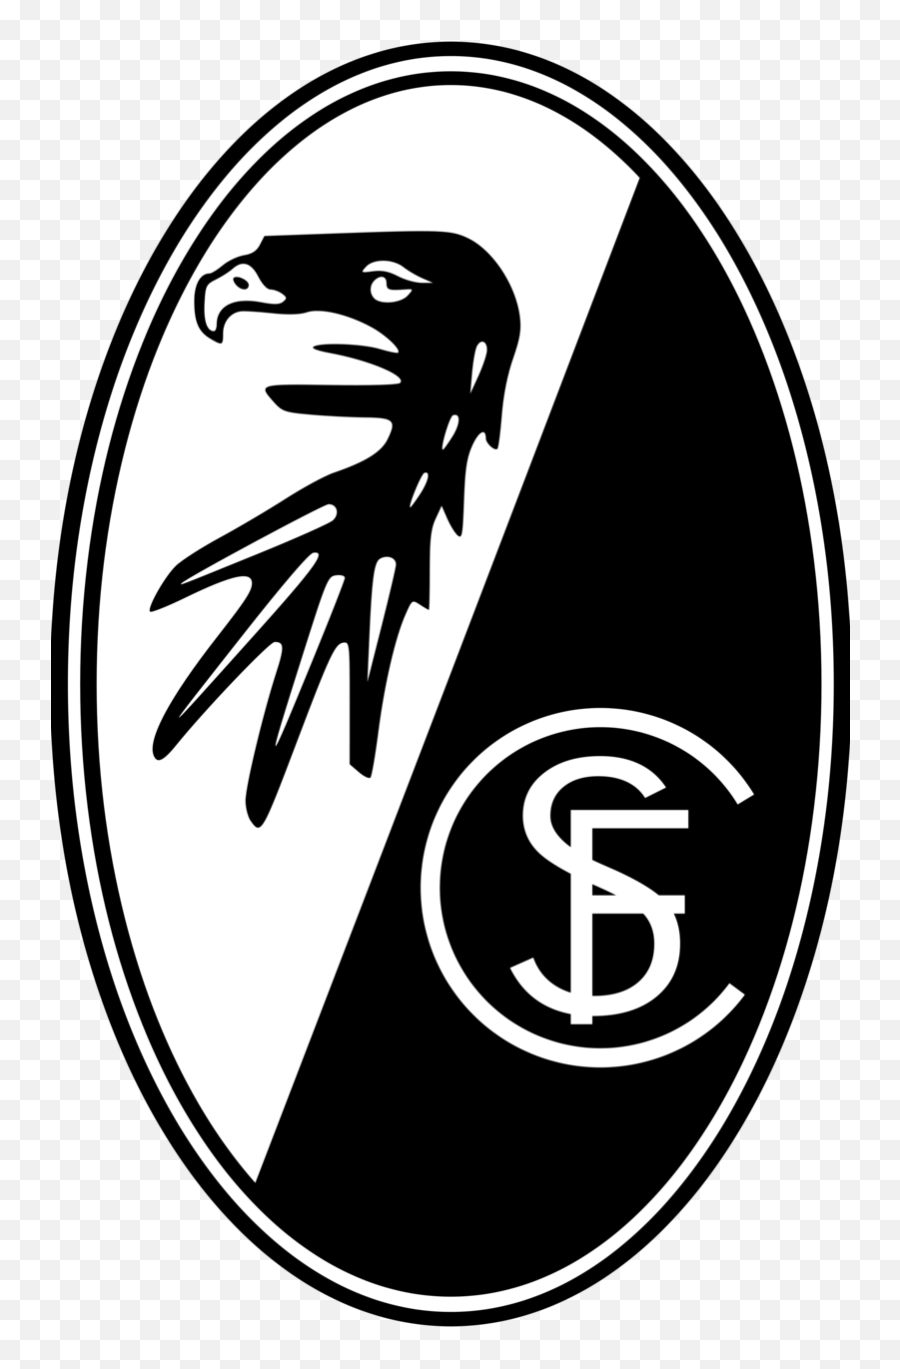 Download Free Png Freiburg - Logo Dlpngcom Freiburg Logo Png Emoji,German Emojis